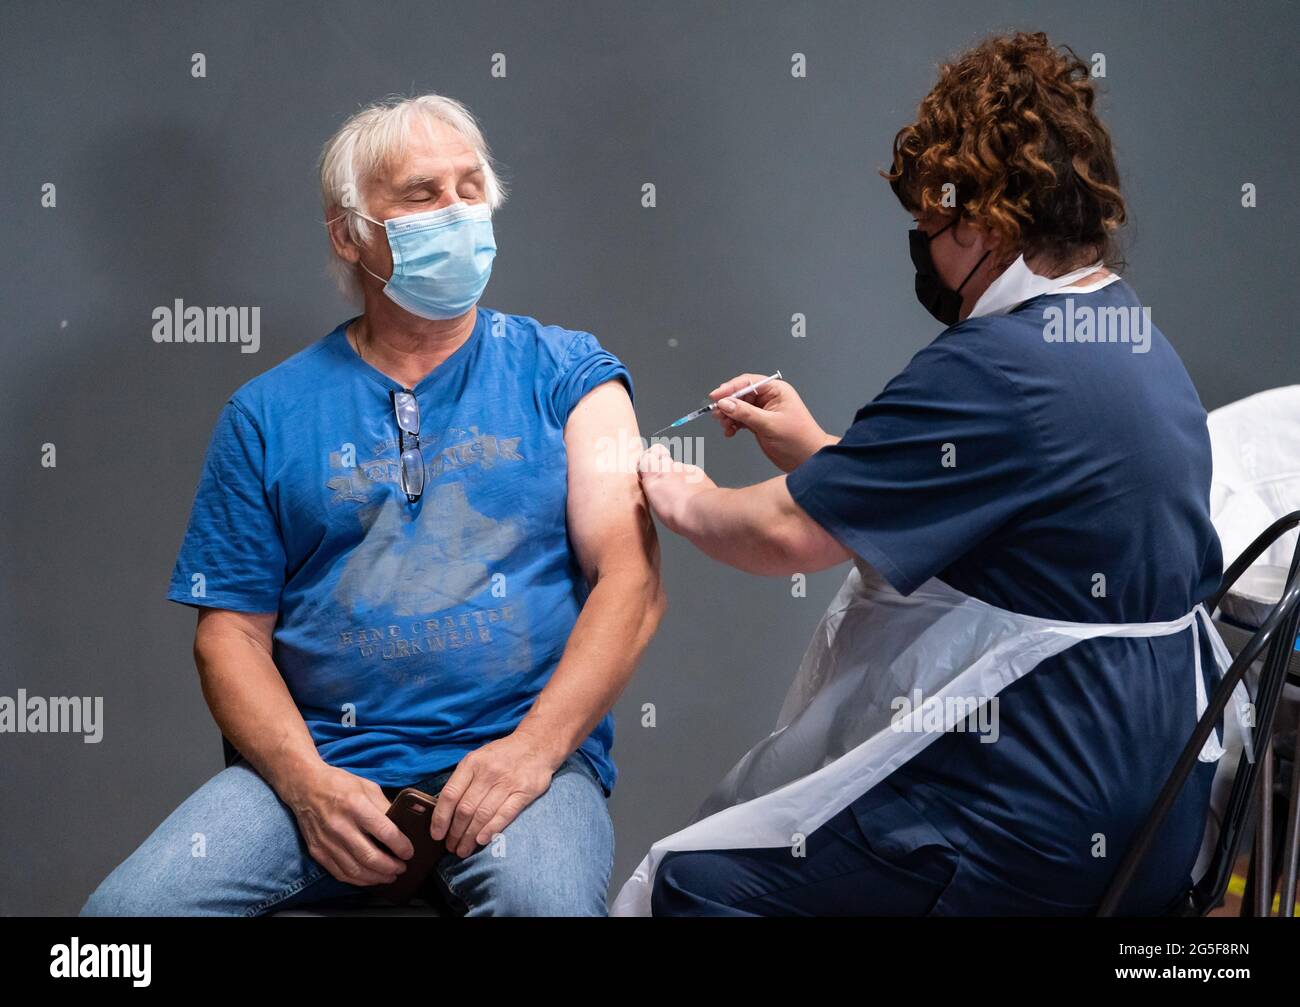 La enfermera Maria Simon (derecha) vacuna Geoff Corner (izquierda) con la vacuna Pfizer Covid-19, en un centro de vacunación contra el coronavirus masivo en el Adwick Leisure Centre, en Doncaster, mientras continúa la campaña de vacunación del NHS 'Grab a jab' en Inglaterra. Fecha de la foto: Domingo 27 de junio de 2021. Foto de stock